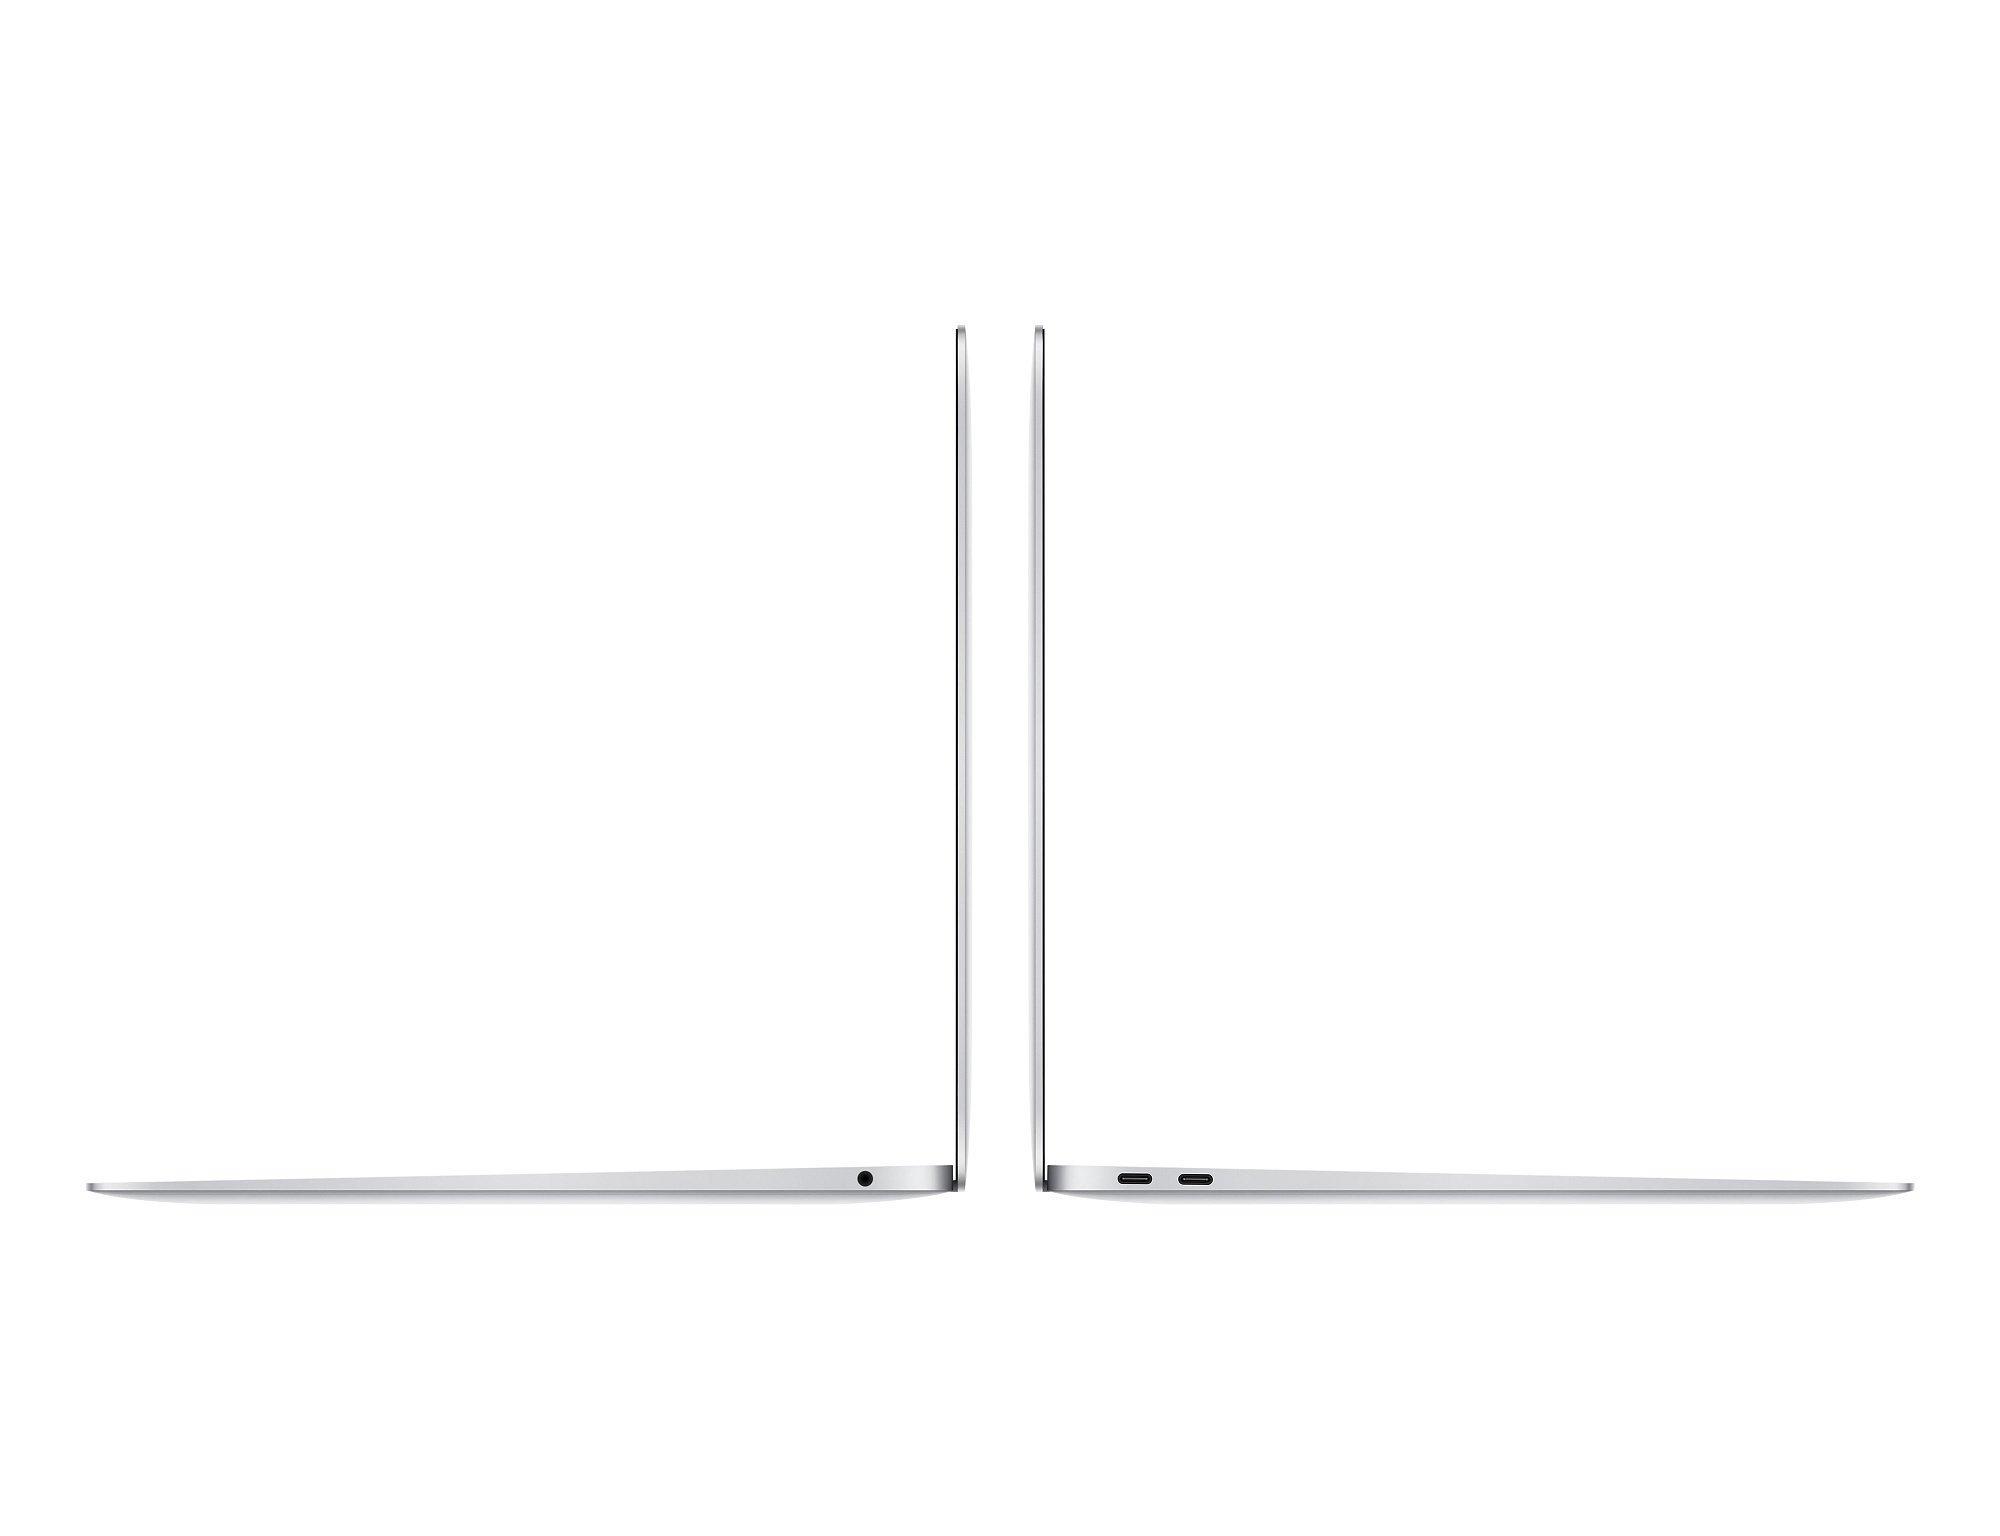 Apple  Reconditionné MacBook Air 13 2018 i5 1,6 Ghz 8 Go 256 Go SSD Gris Sidéral - Très bon état 